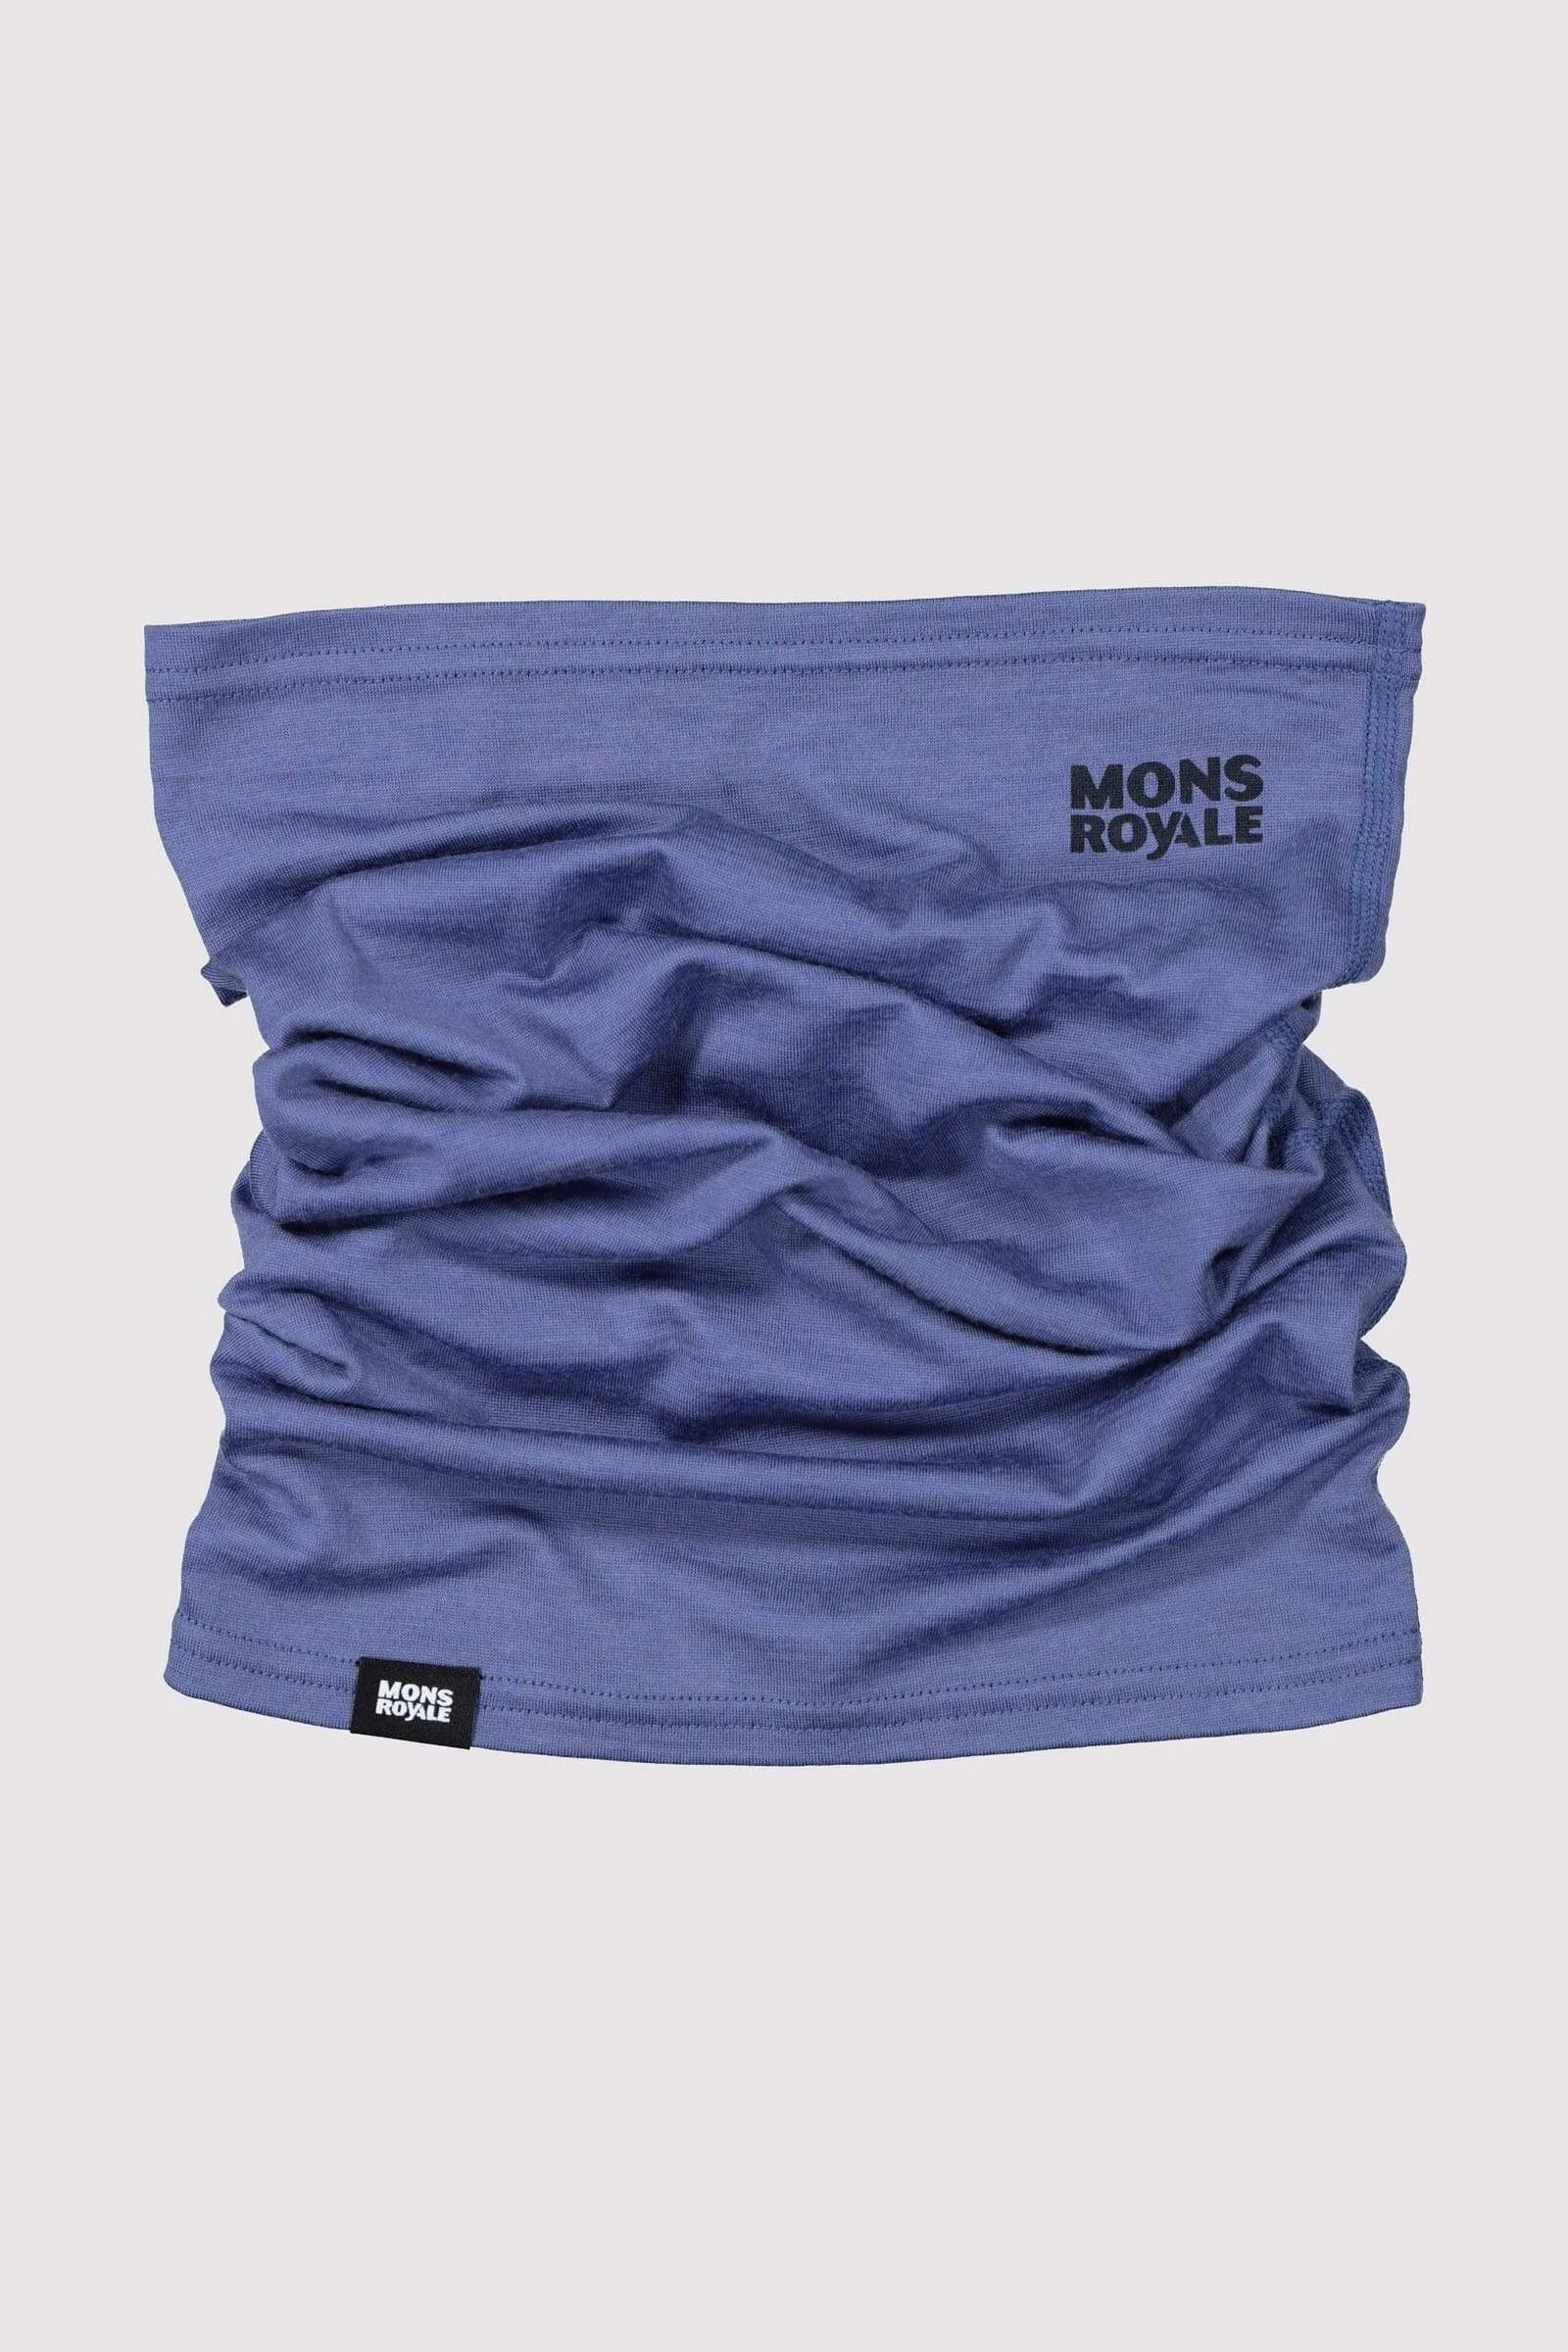 Mons Royale Daily Dose Neckwarmer - Merino Wool, Blue Velvet